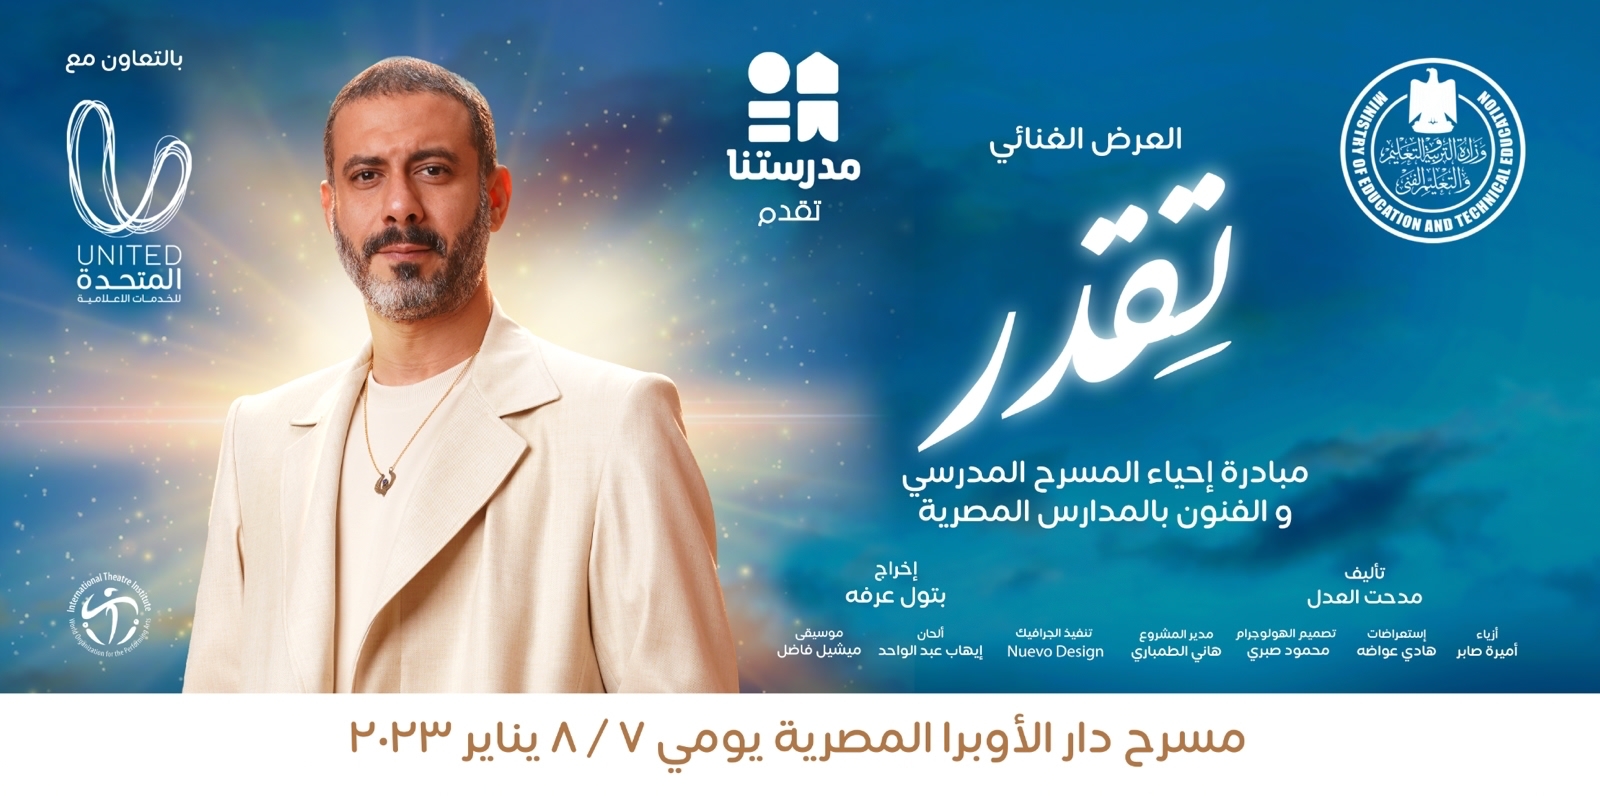 غداً وبمشاركة النجوم..انطلاق العرض المسرحي "تقدر" ضمن مبادرة إحياء المسرح المدرسي 2